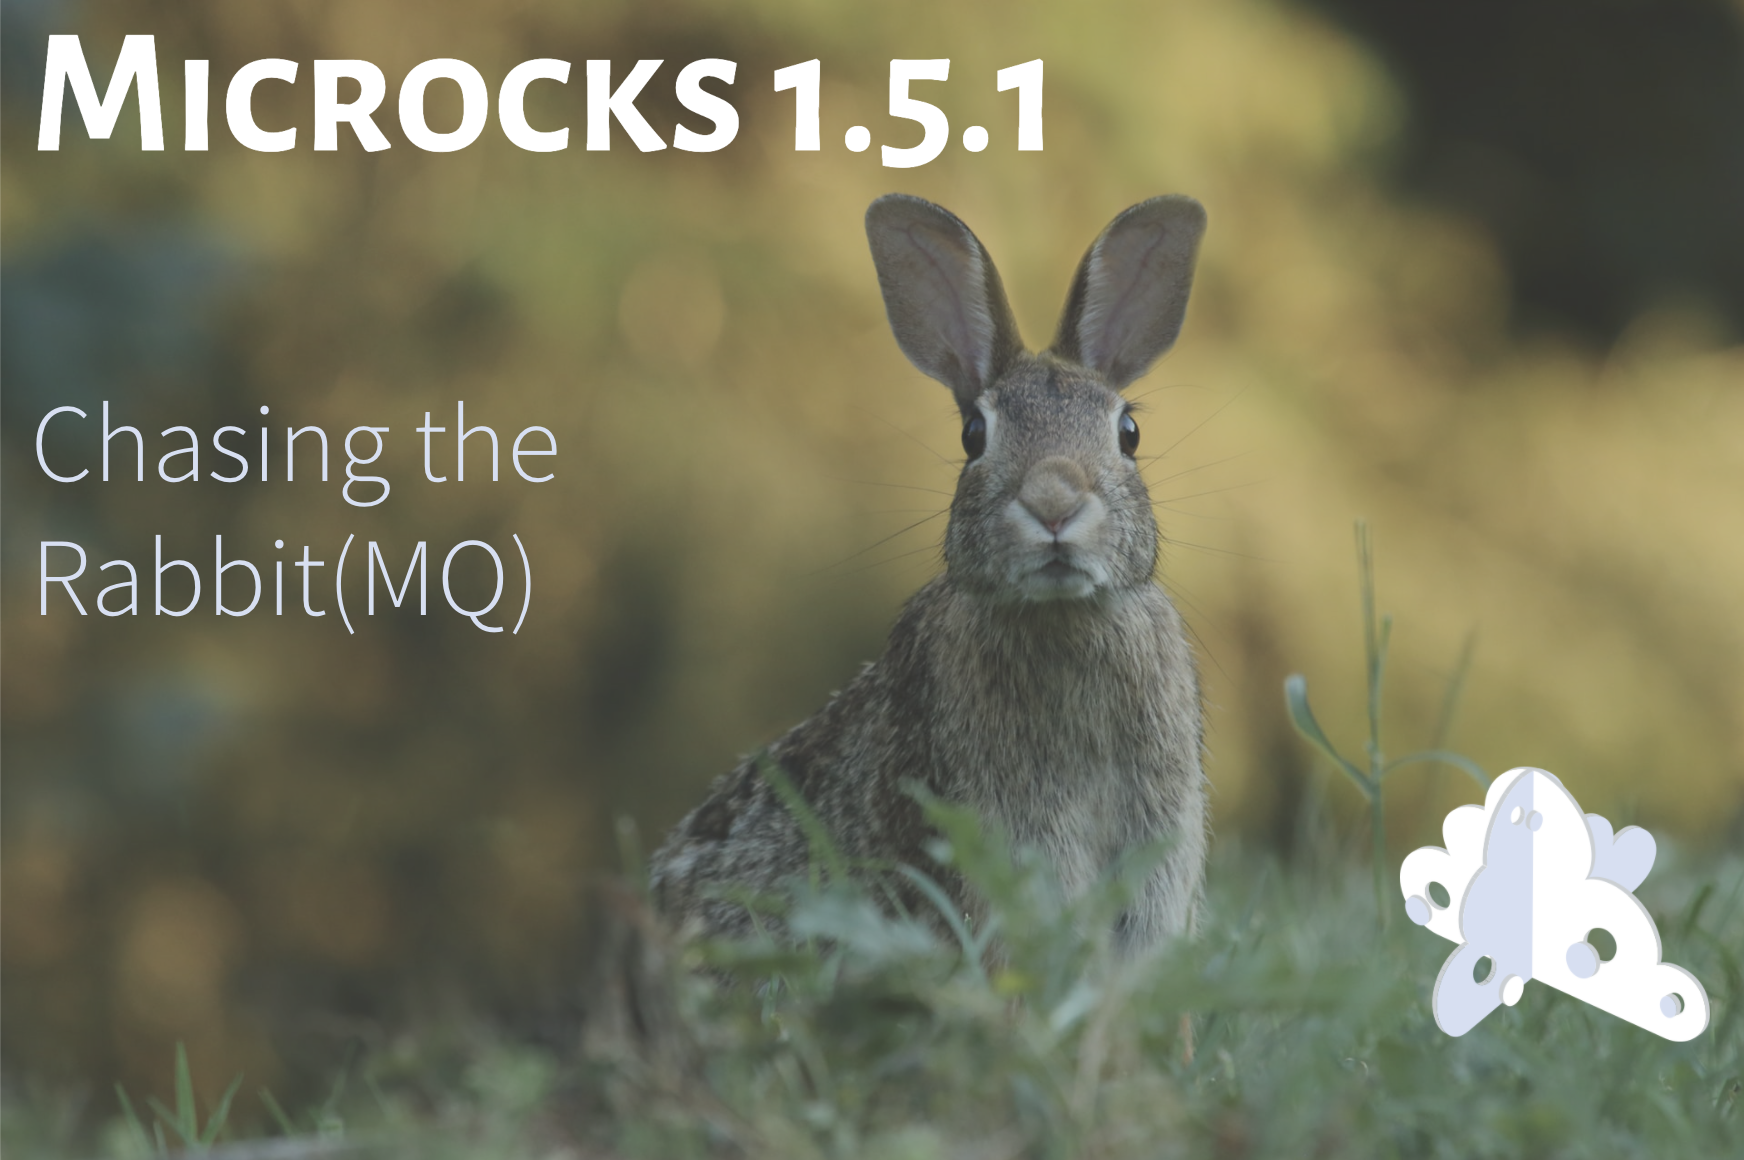 Microcks 1.5.1 release 🚀